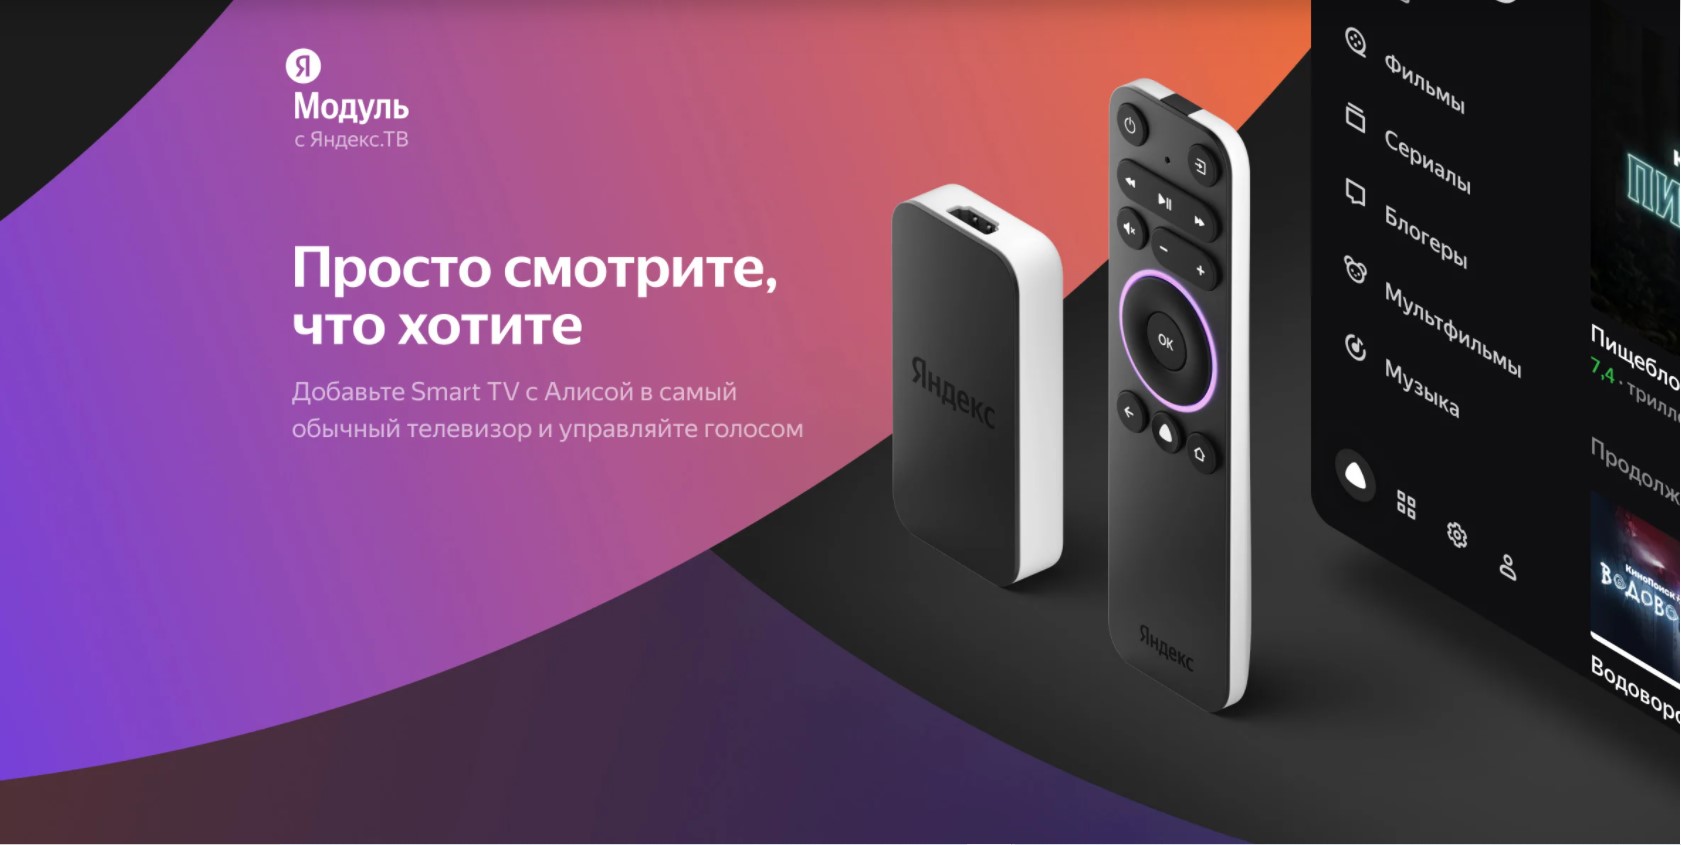 Смотрим новинки кино бесплатно на Яндекс модуле и Яндекс ТВ